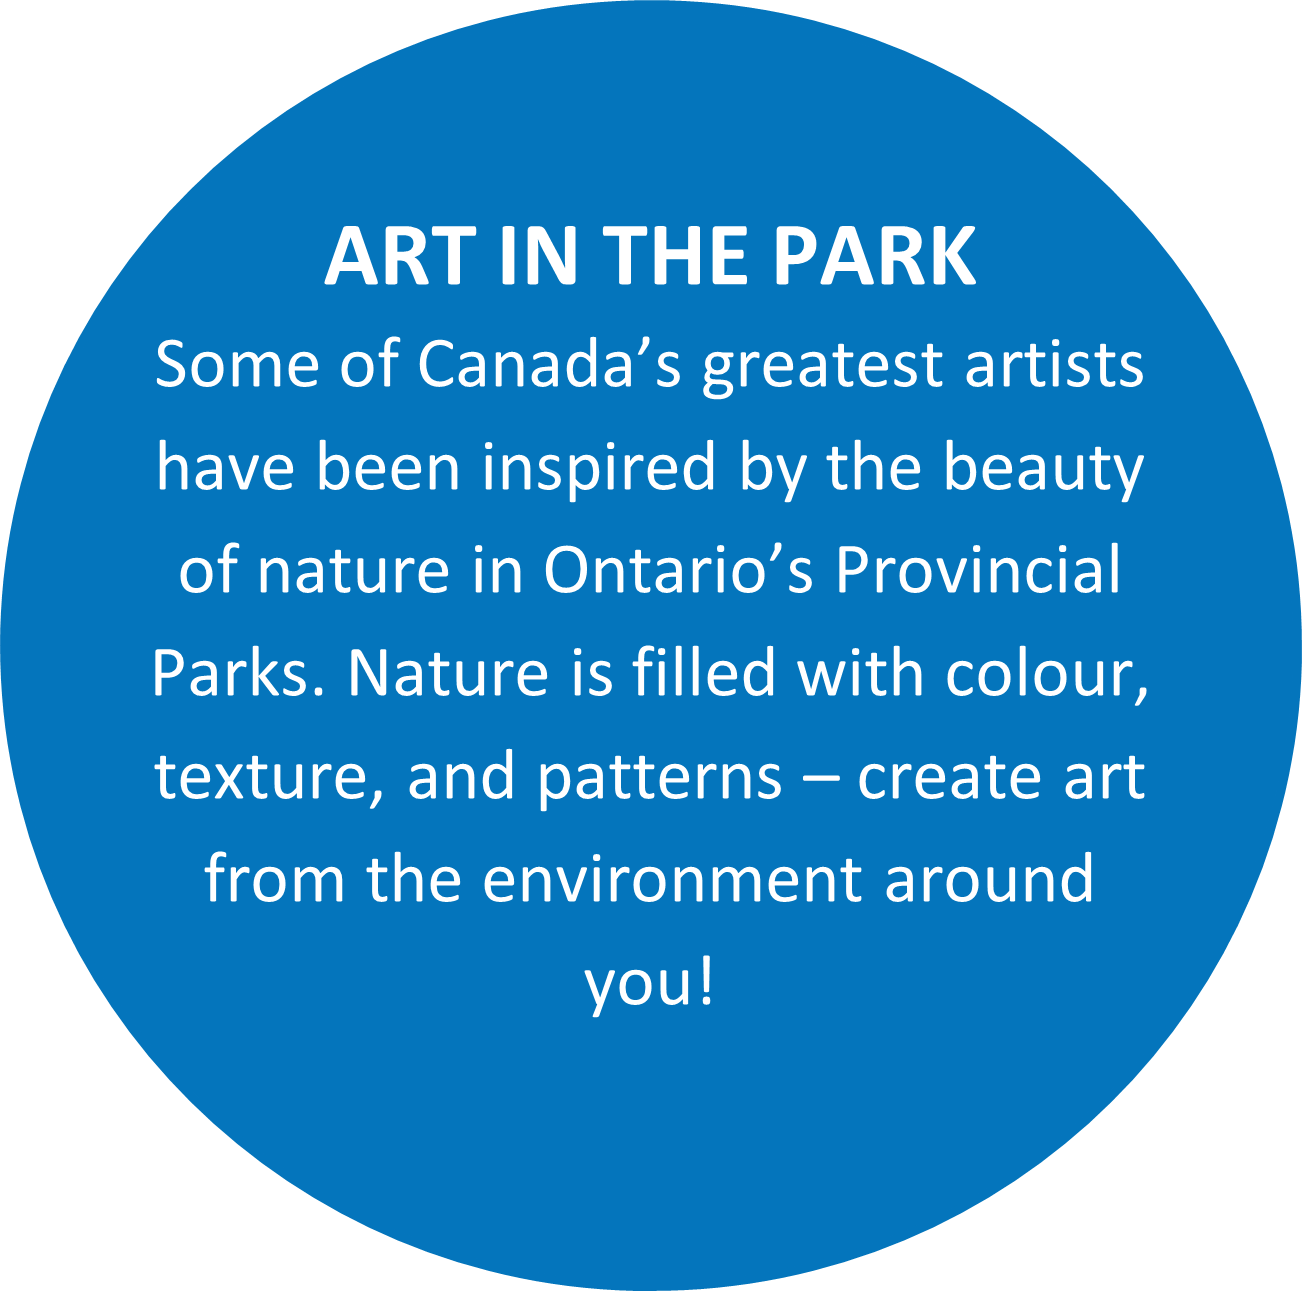 Texte : L’ART DANS LE PARC Certains des plus grands artistes du Canada ont été inspirés par la beauté de la nature dans les parcs provinciaux de l’Ontario. La nature est remplie de couleurs, de textures et de motifs : créez des œuvres d’art à partir de l’environnement qui vous entoure!